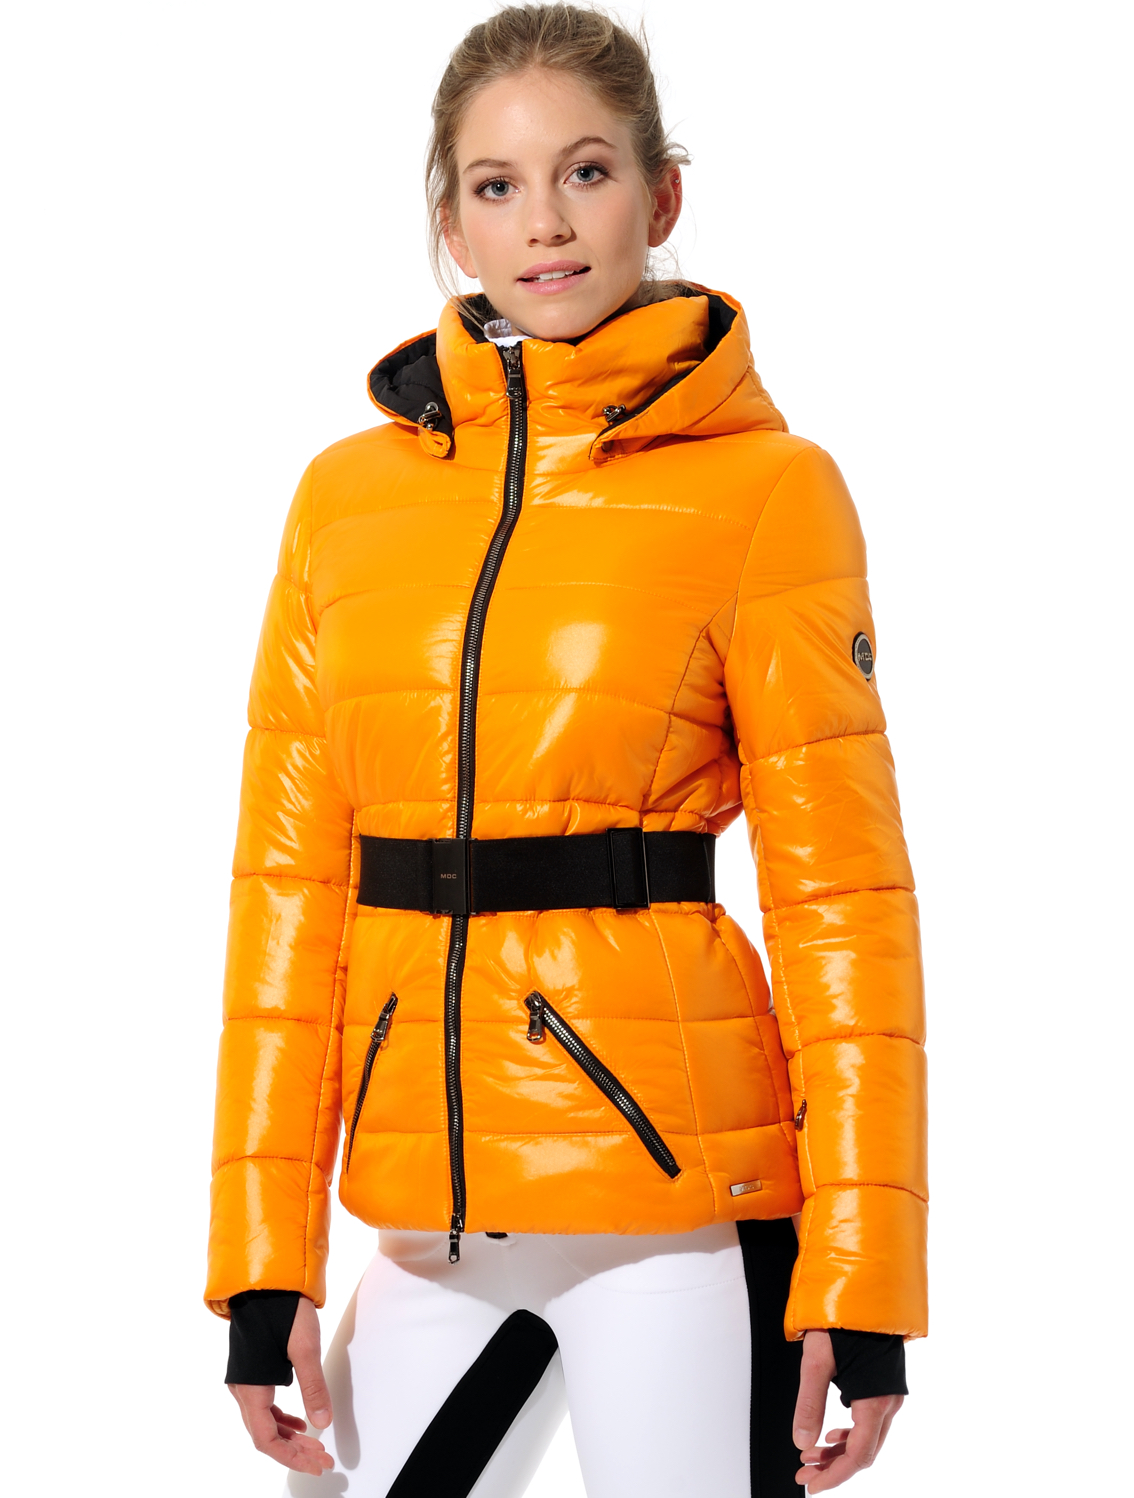 shiny ski jacket autumn 